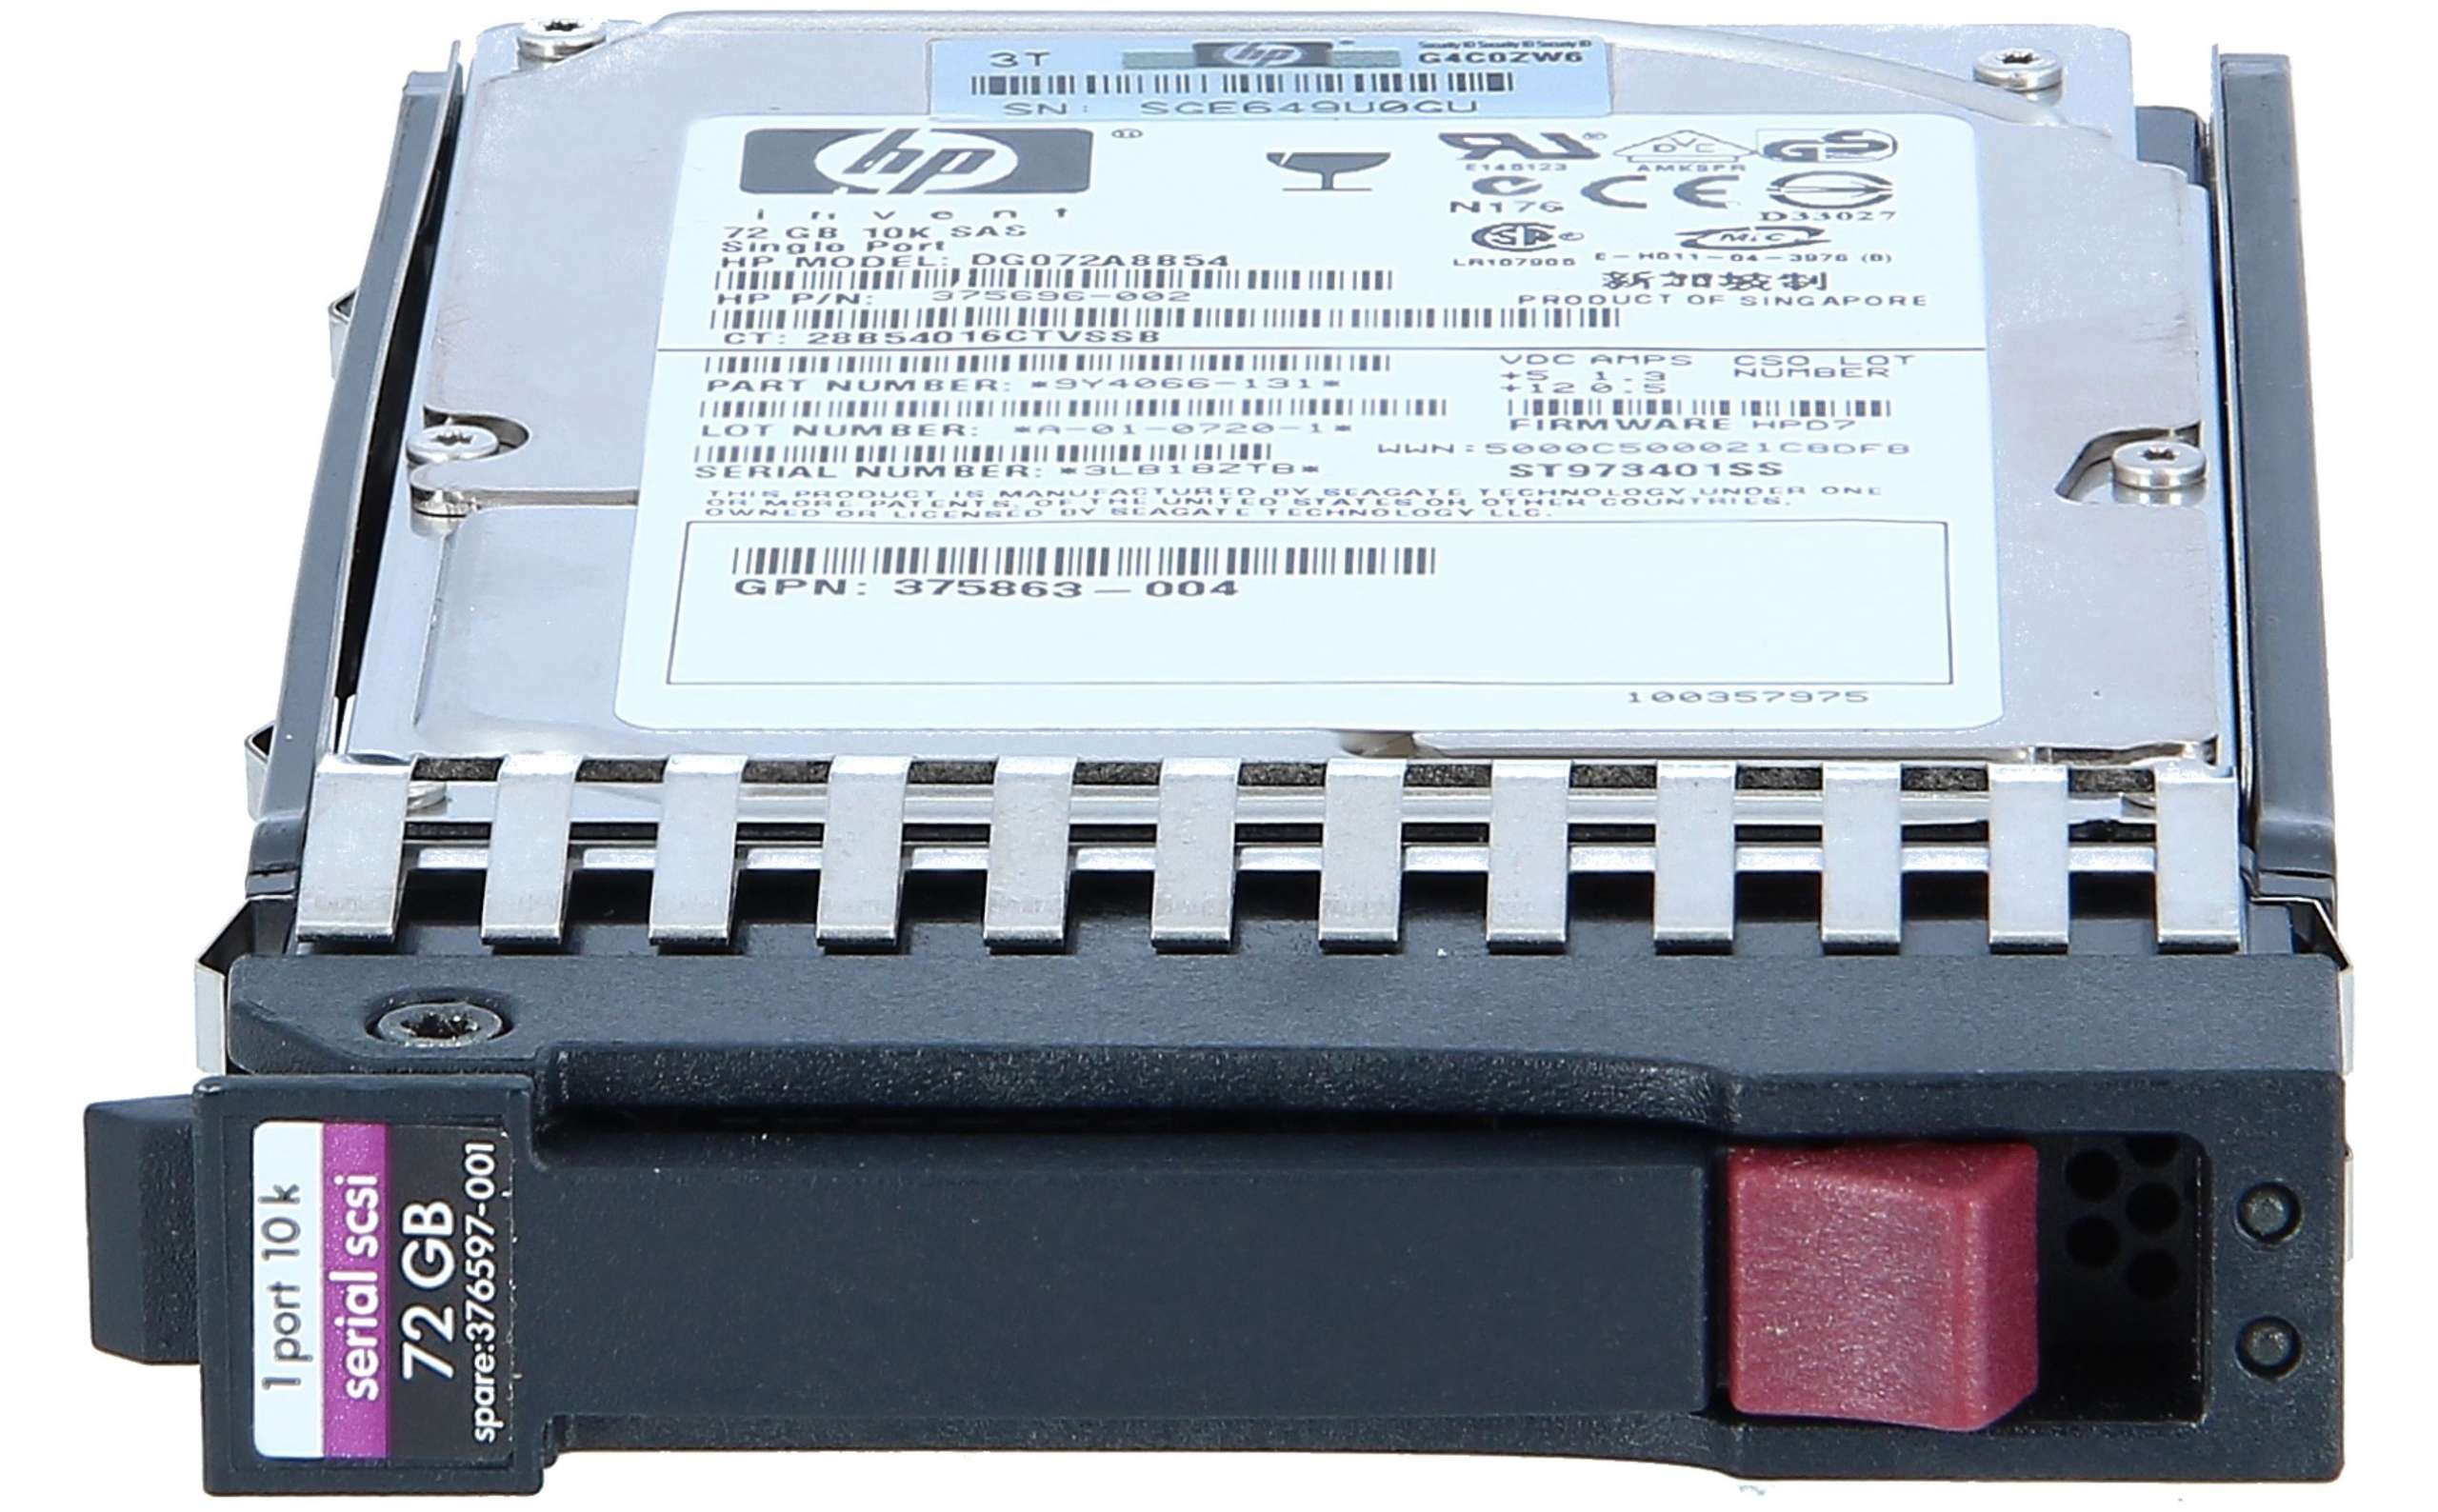 SAS , 7,87 cm, 1,6 cm, 13,84 cm HP 627195-001 6,35 cm 300 GB Serial Attached SCSI Disco duro 2.5